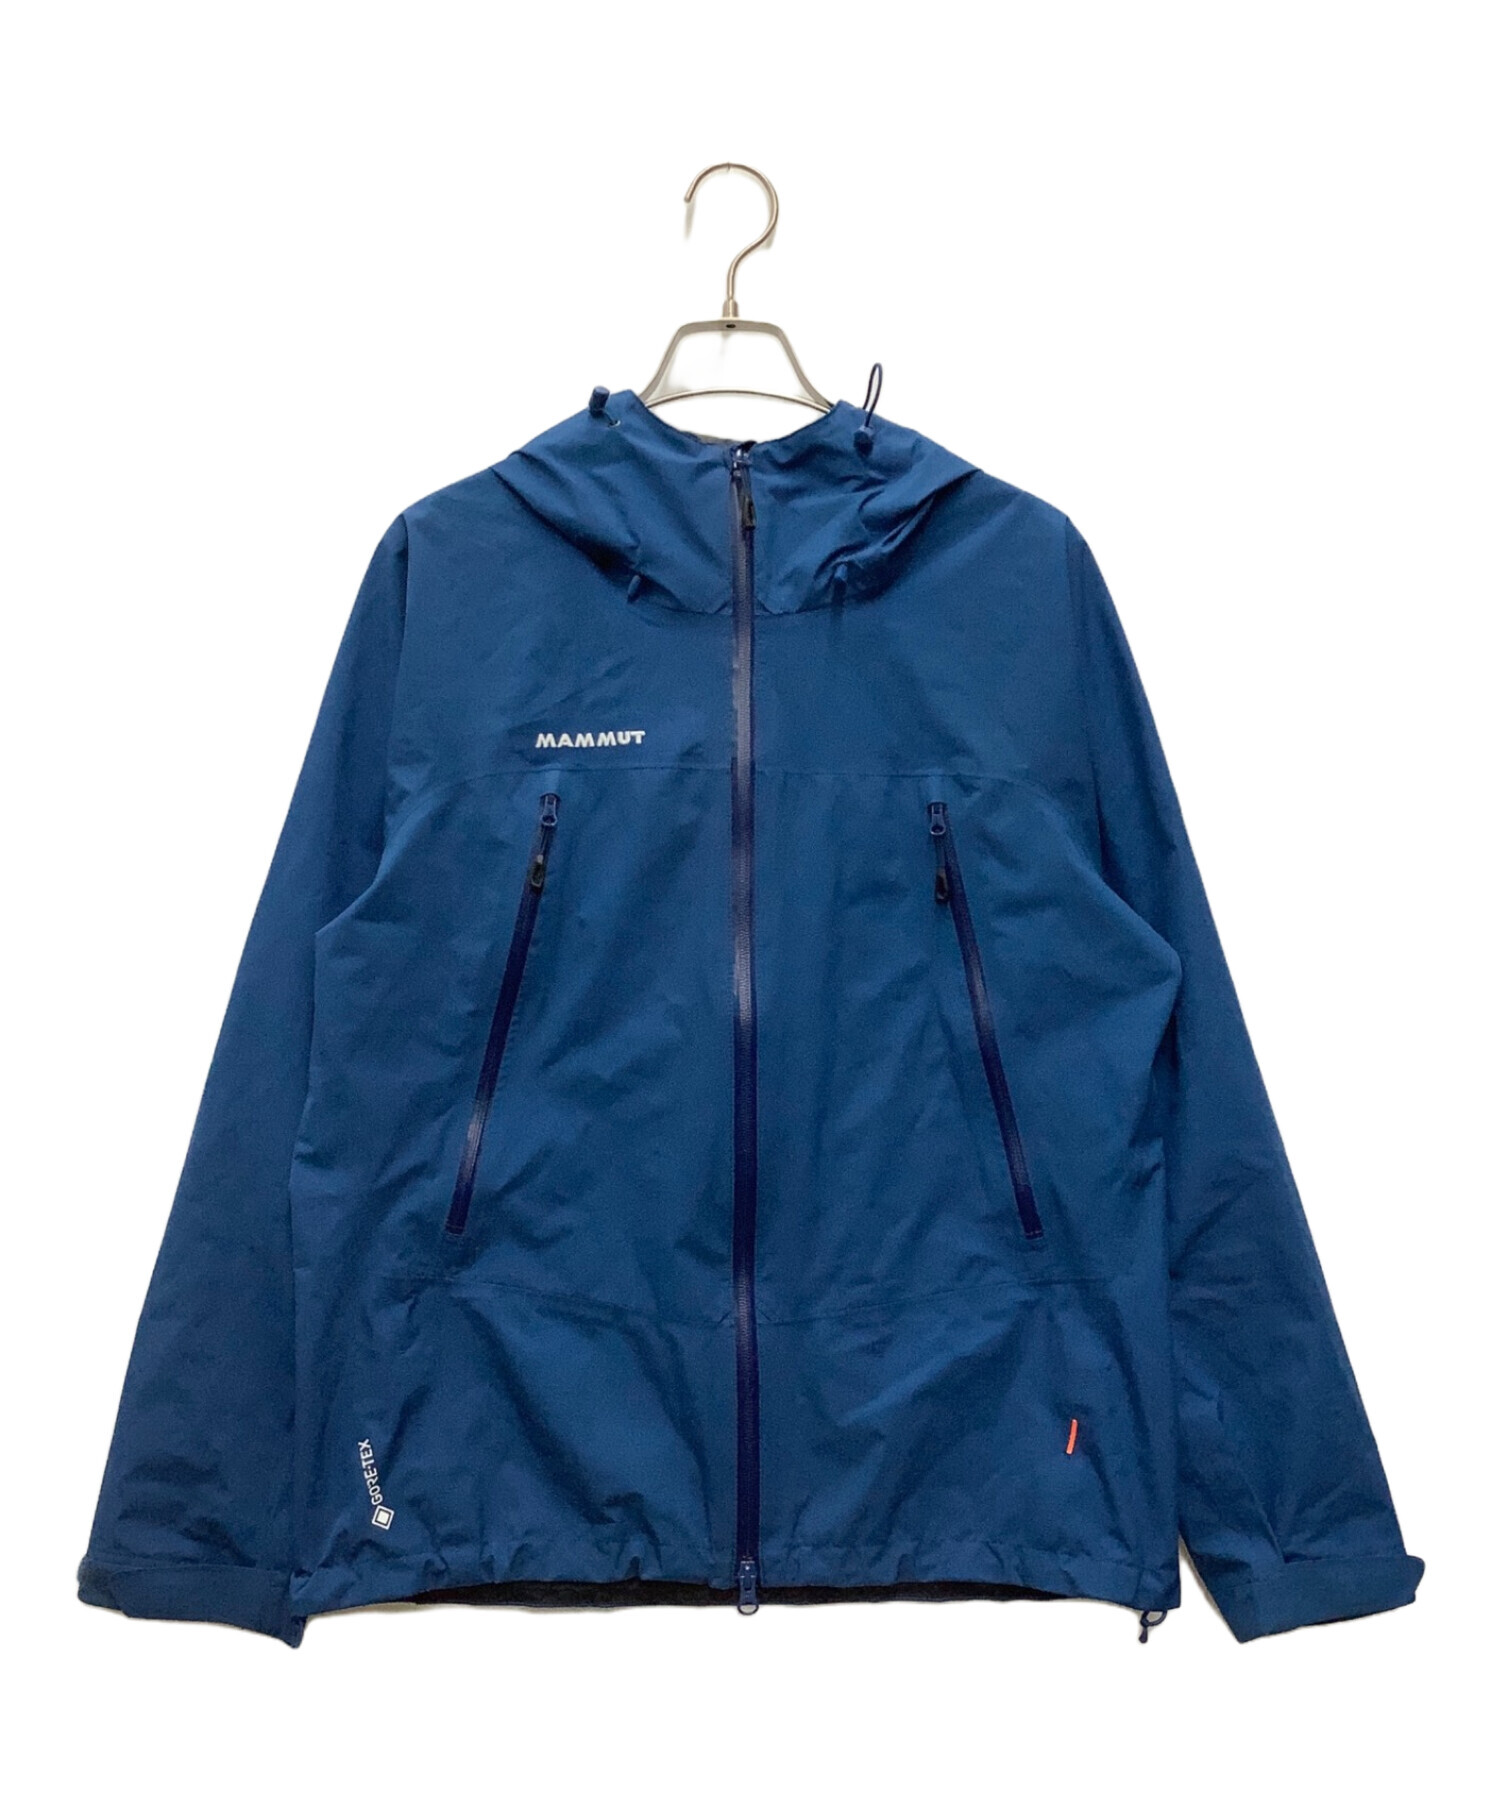 MAMMUT (マムート) CLIMATE Rain Suit ブルー×ブラック サイズ:SIZE M